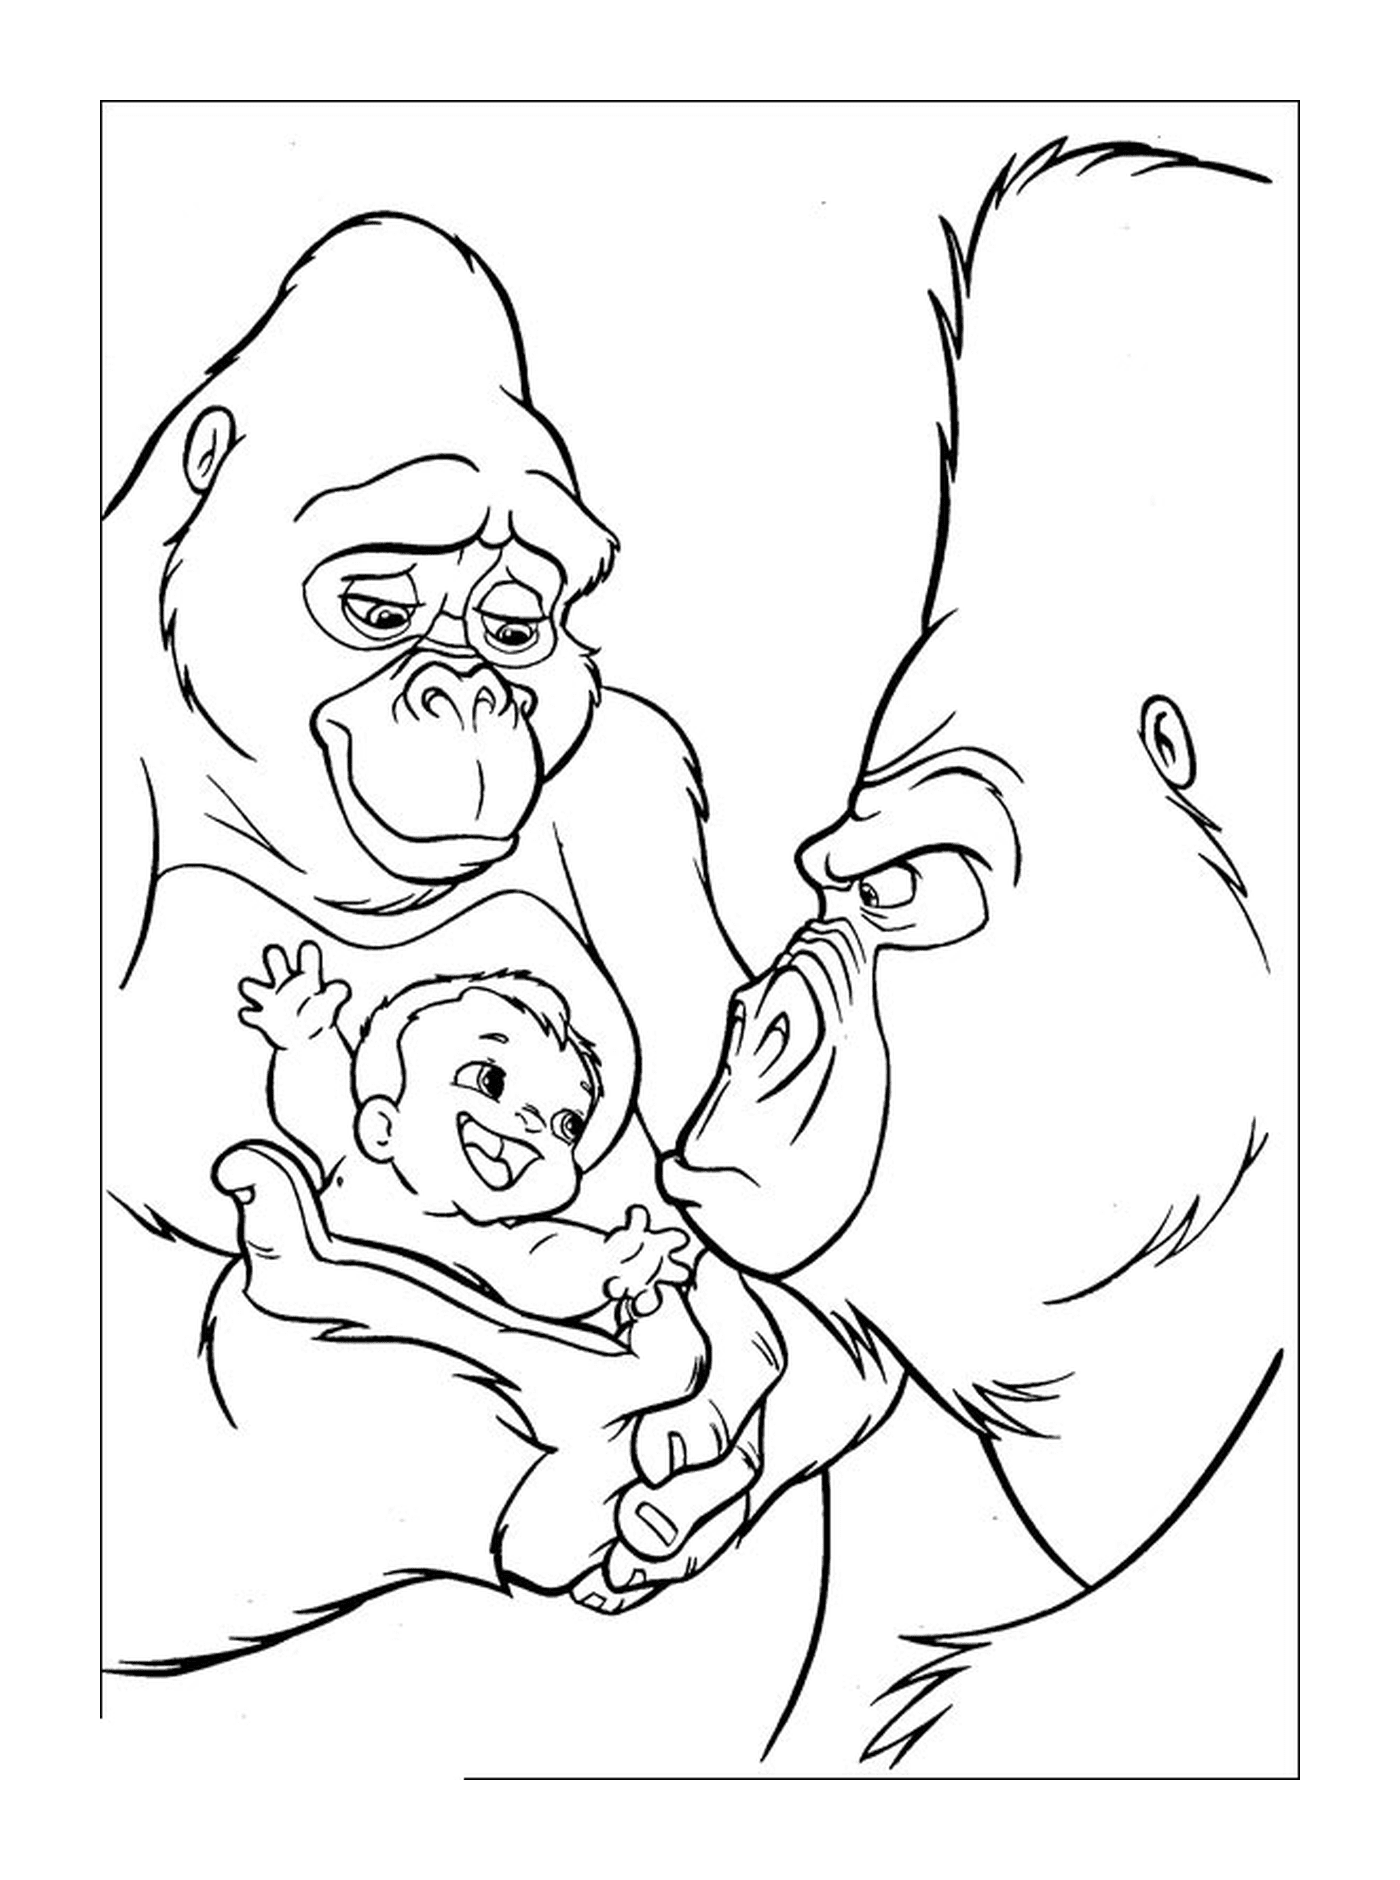  Erwachsener und Baby Gorilla mit einem Baby 